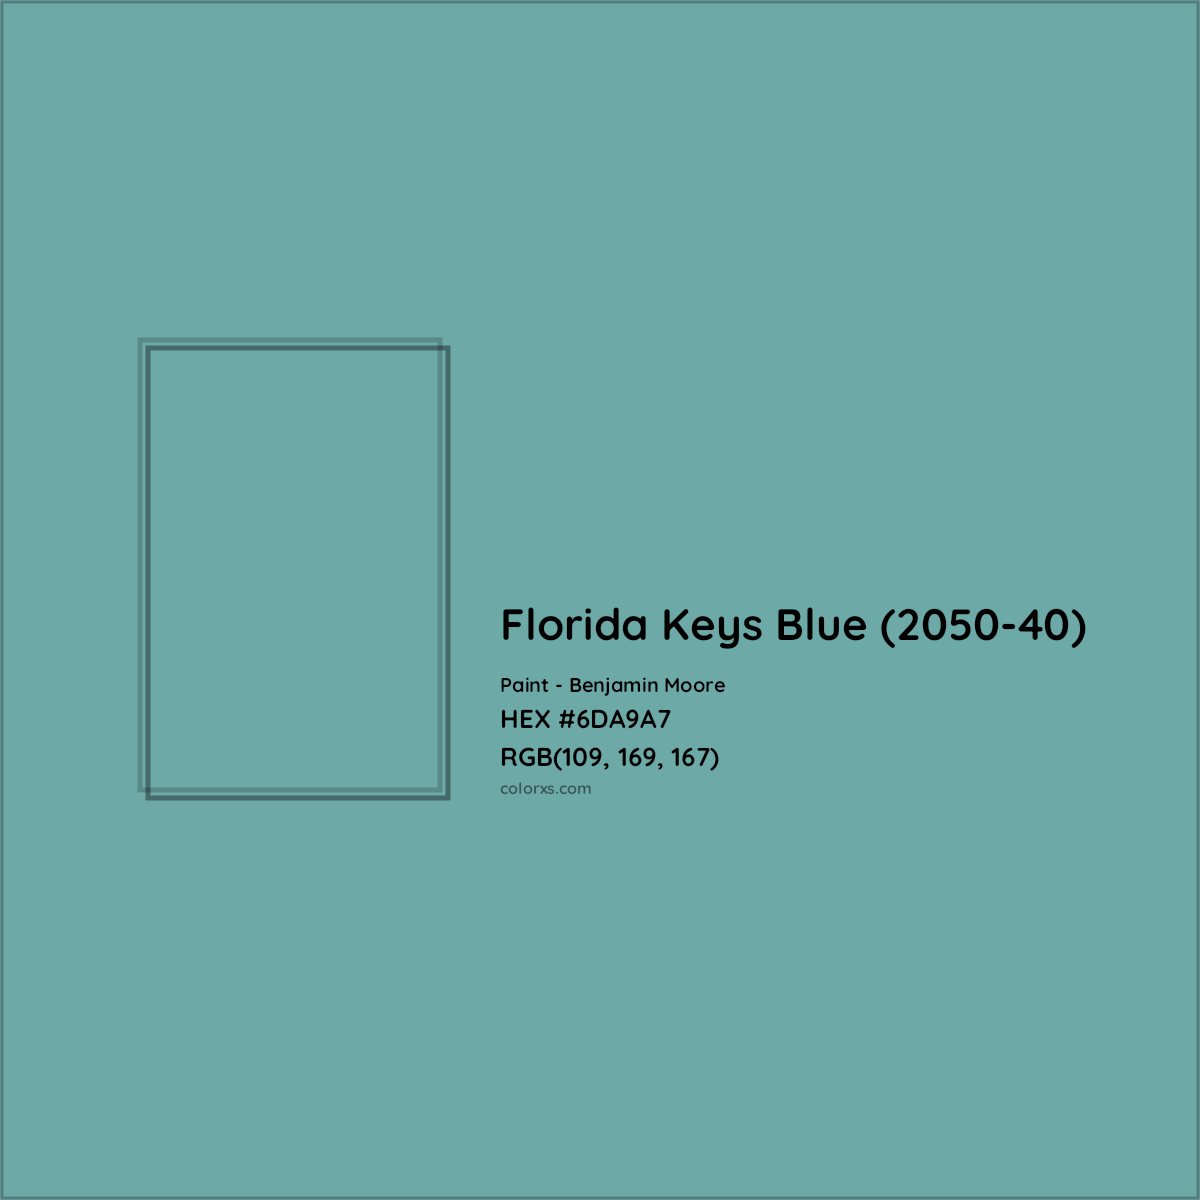 HEX #6DA9A7 Florida Keys Blue (2050-40) Paint Benjamin Moore - Color Code